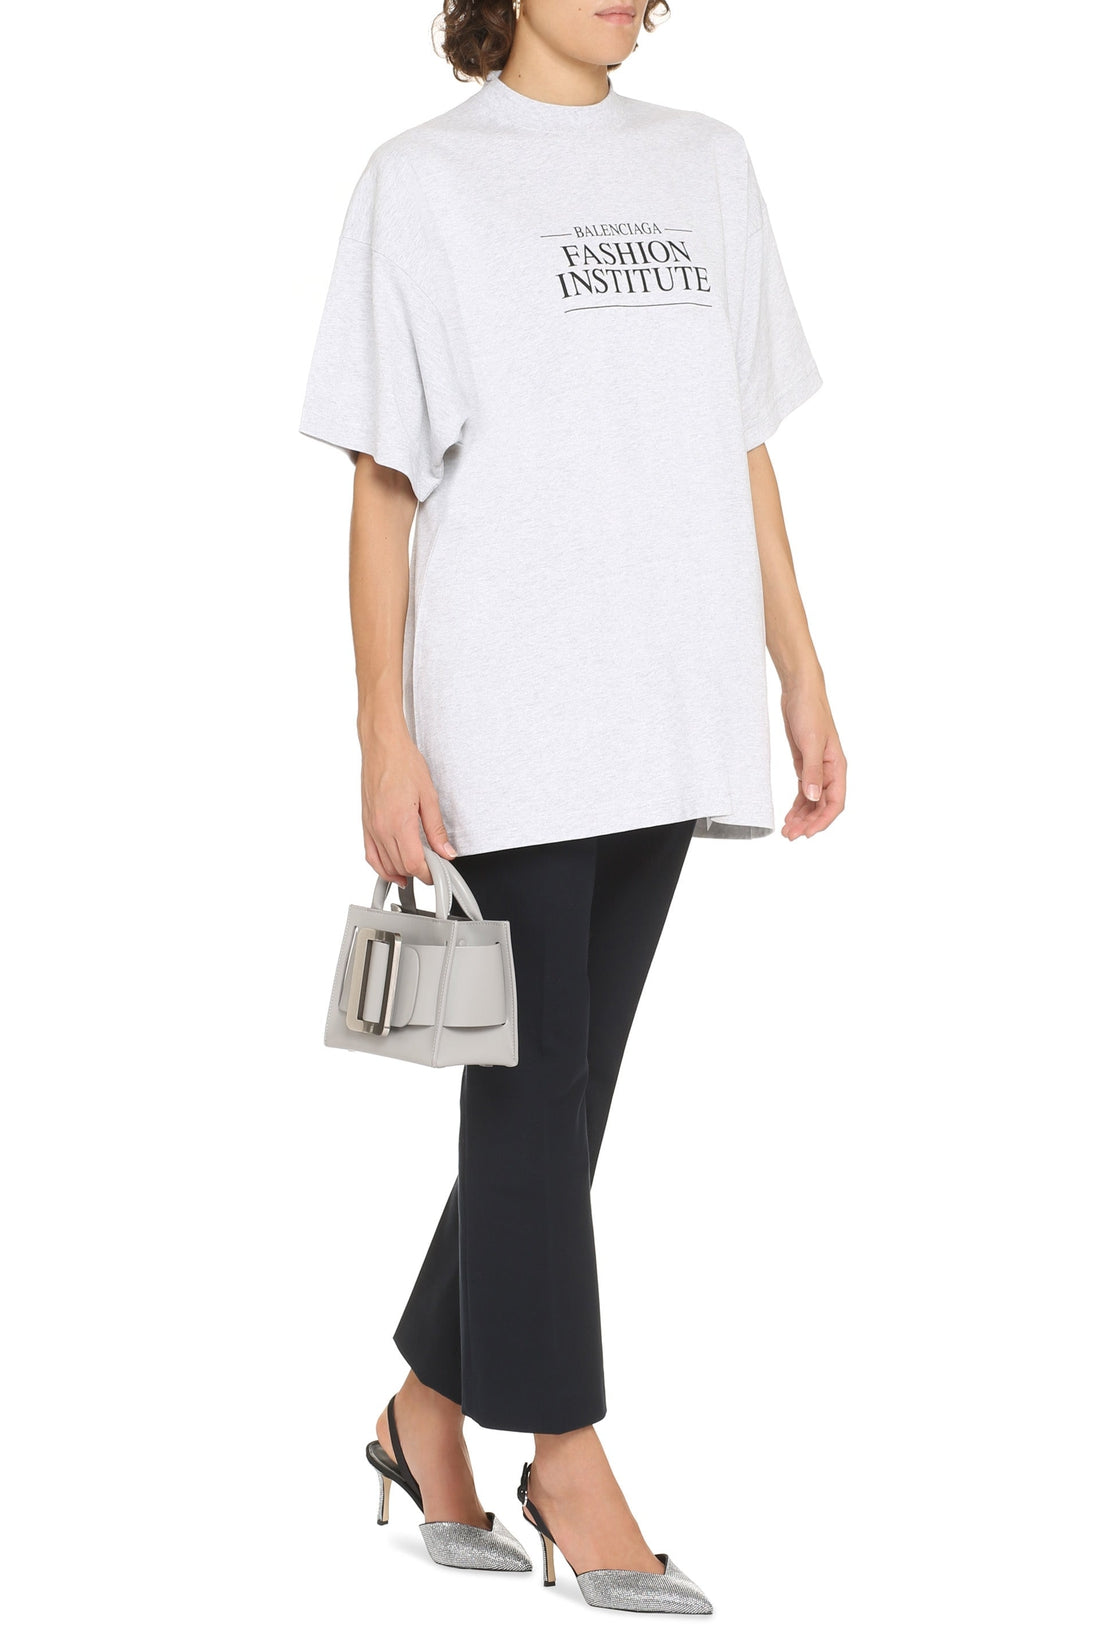 Balenciaga-OUTLET-SALE-Printed cotton T-shirt-ARCHIVIST